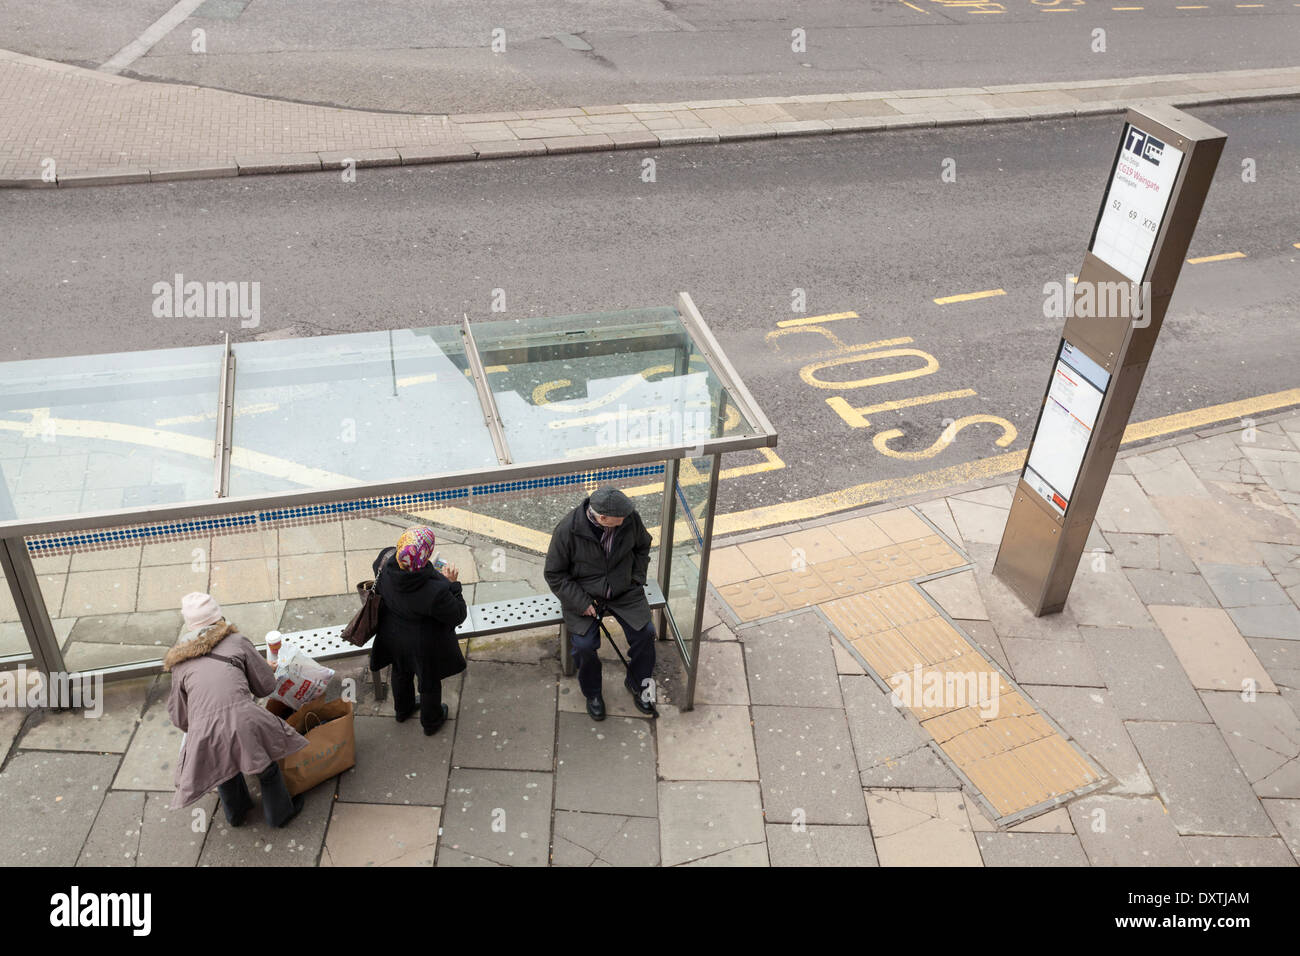 Persone in attesa ad una fermata di autobus di Sheffield, nello Yorkshire, Inghilterra, Regno Unito Foto Stock